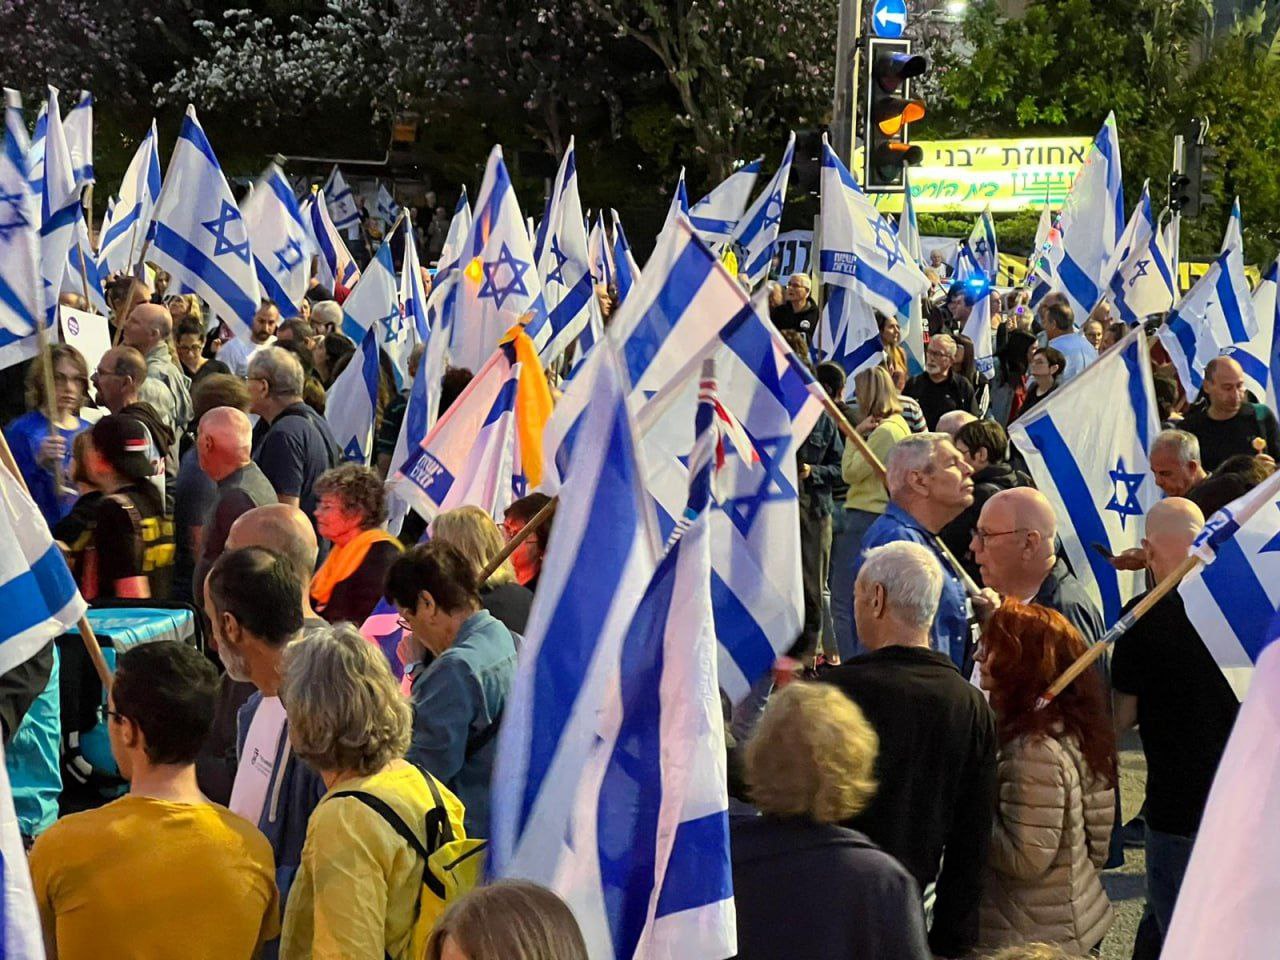 بالفيديو: الآلاف يتظاهرون ضد نتنياهو في حيفا وتل أبيب
